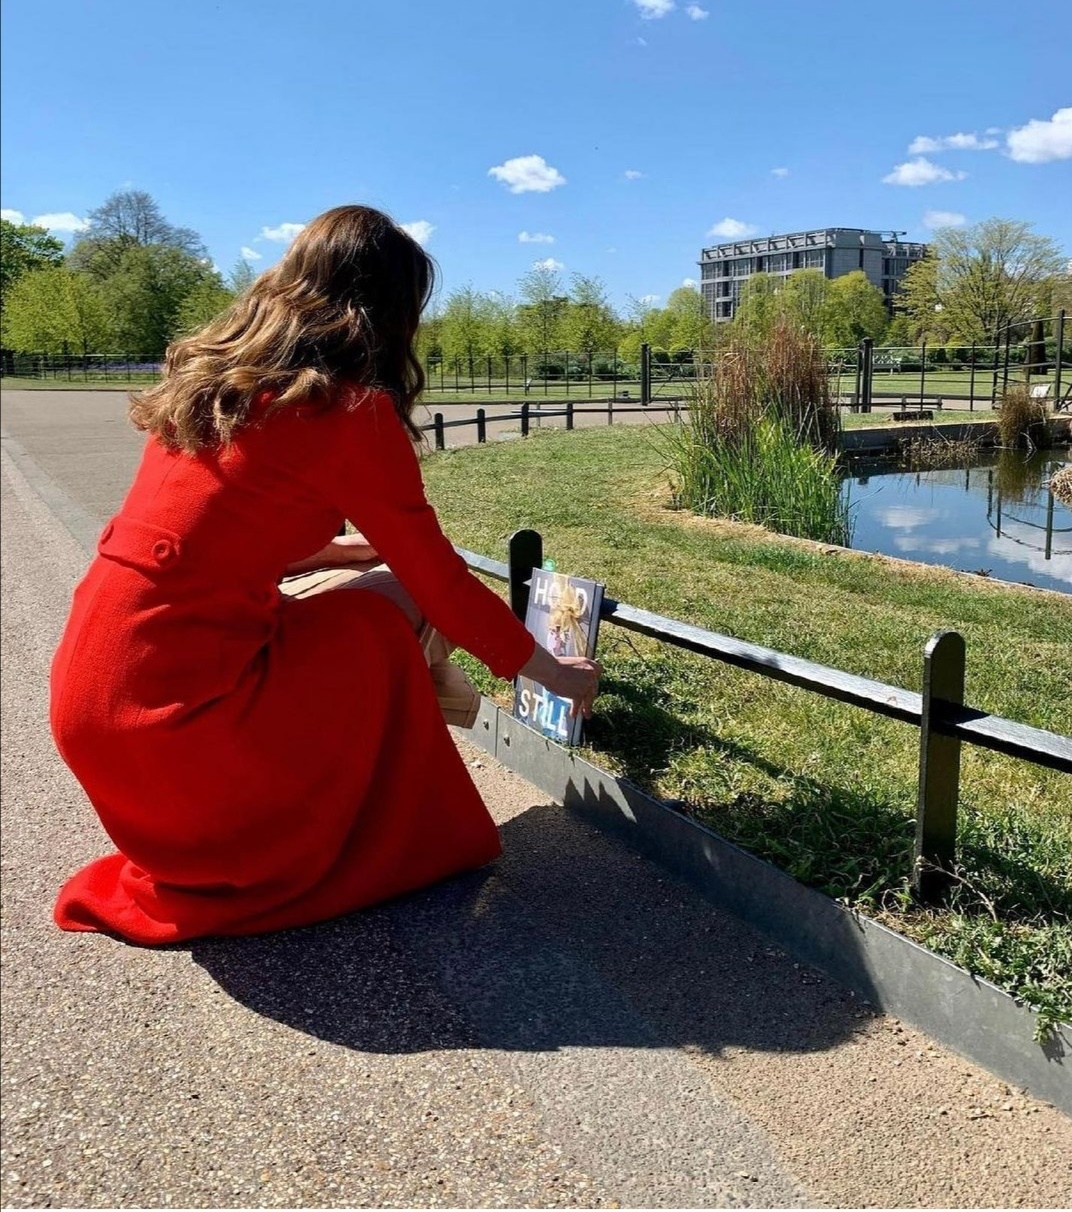 كيت ميدلتون تضع الكتاب وسط حدائق منزلها- الصورة من حساب دوق ودوقة كامبريدج على إنستغرام